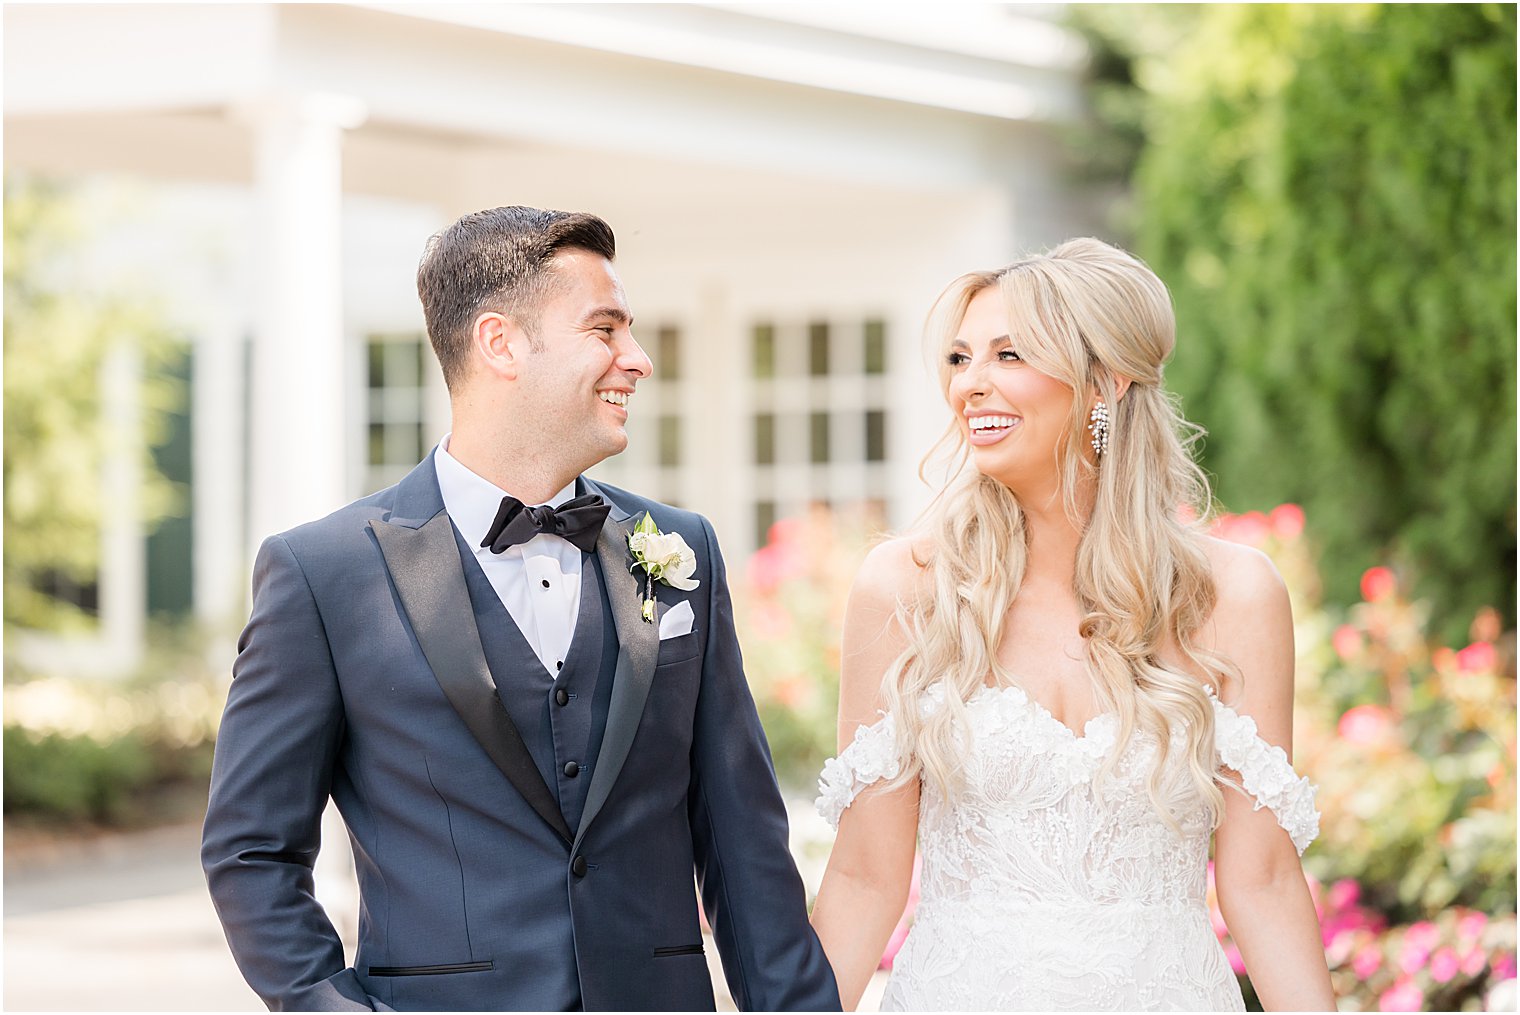 newlyweds smile together during NJ wedding photos